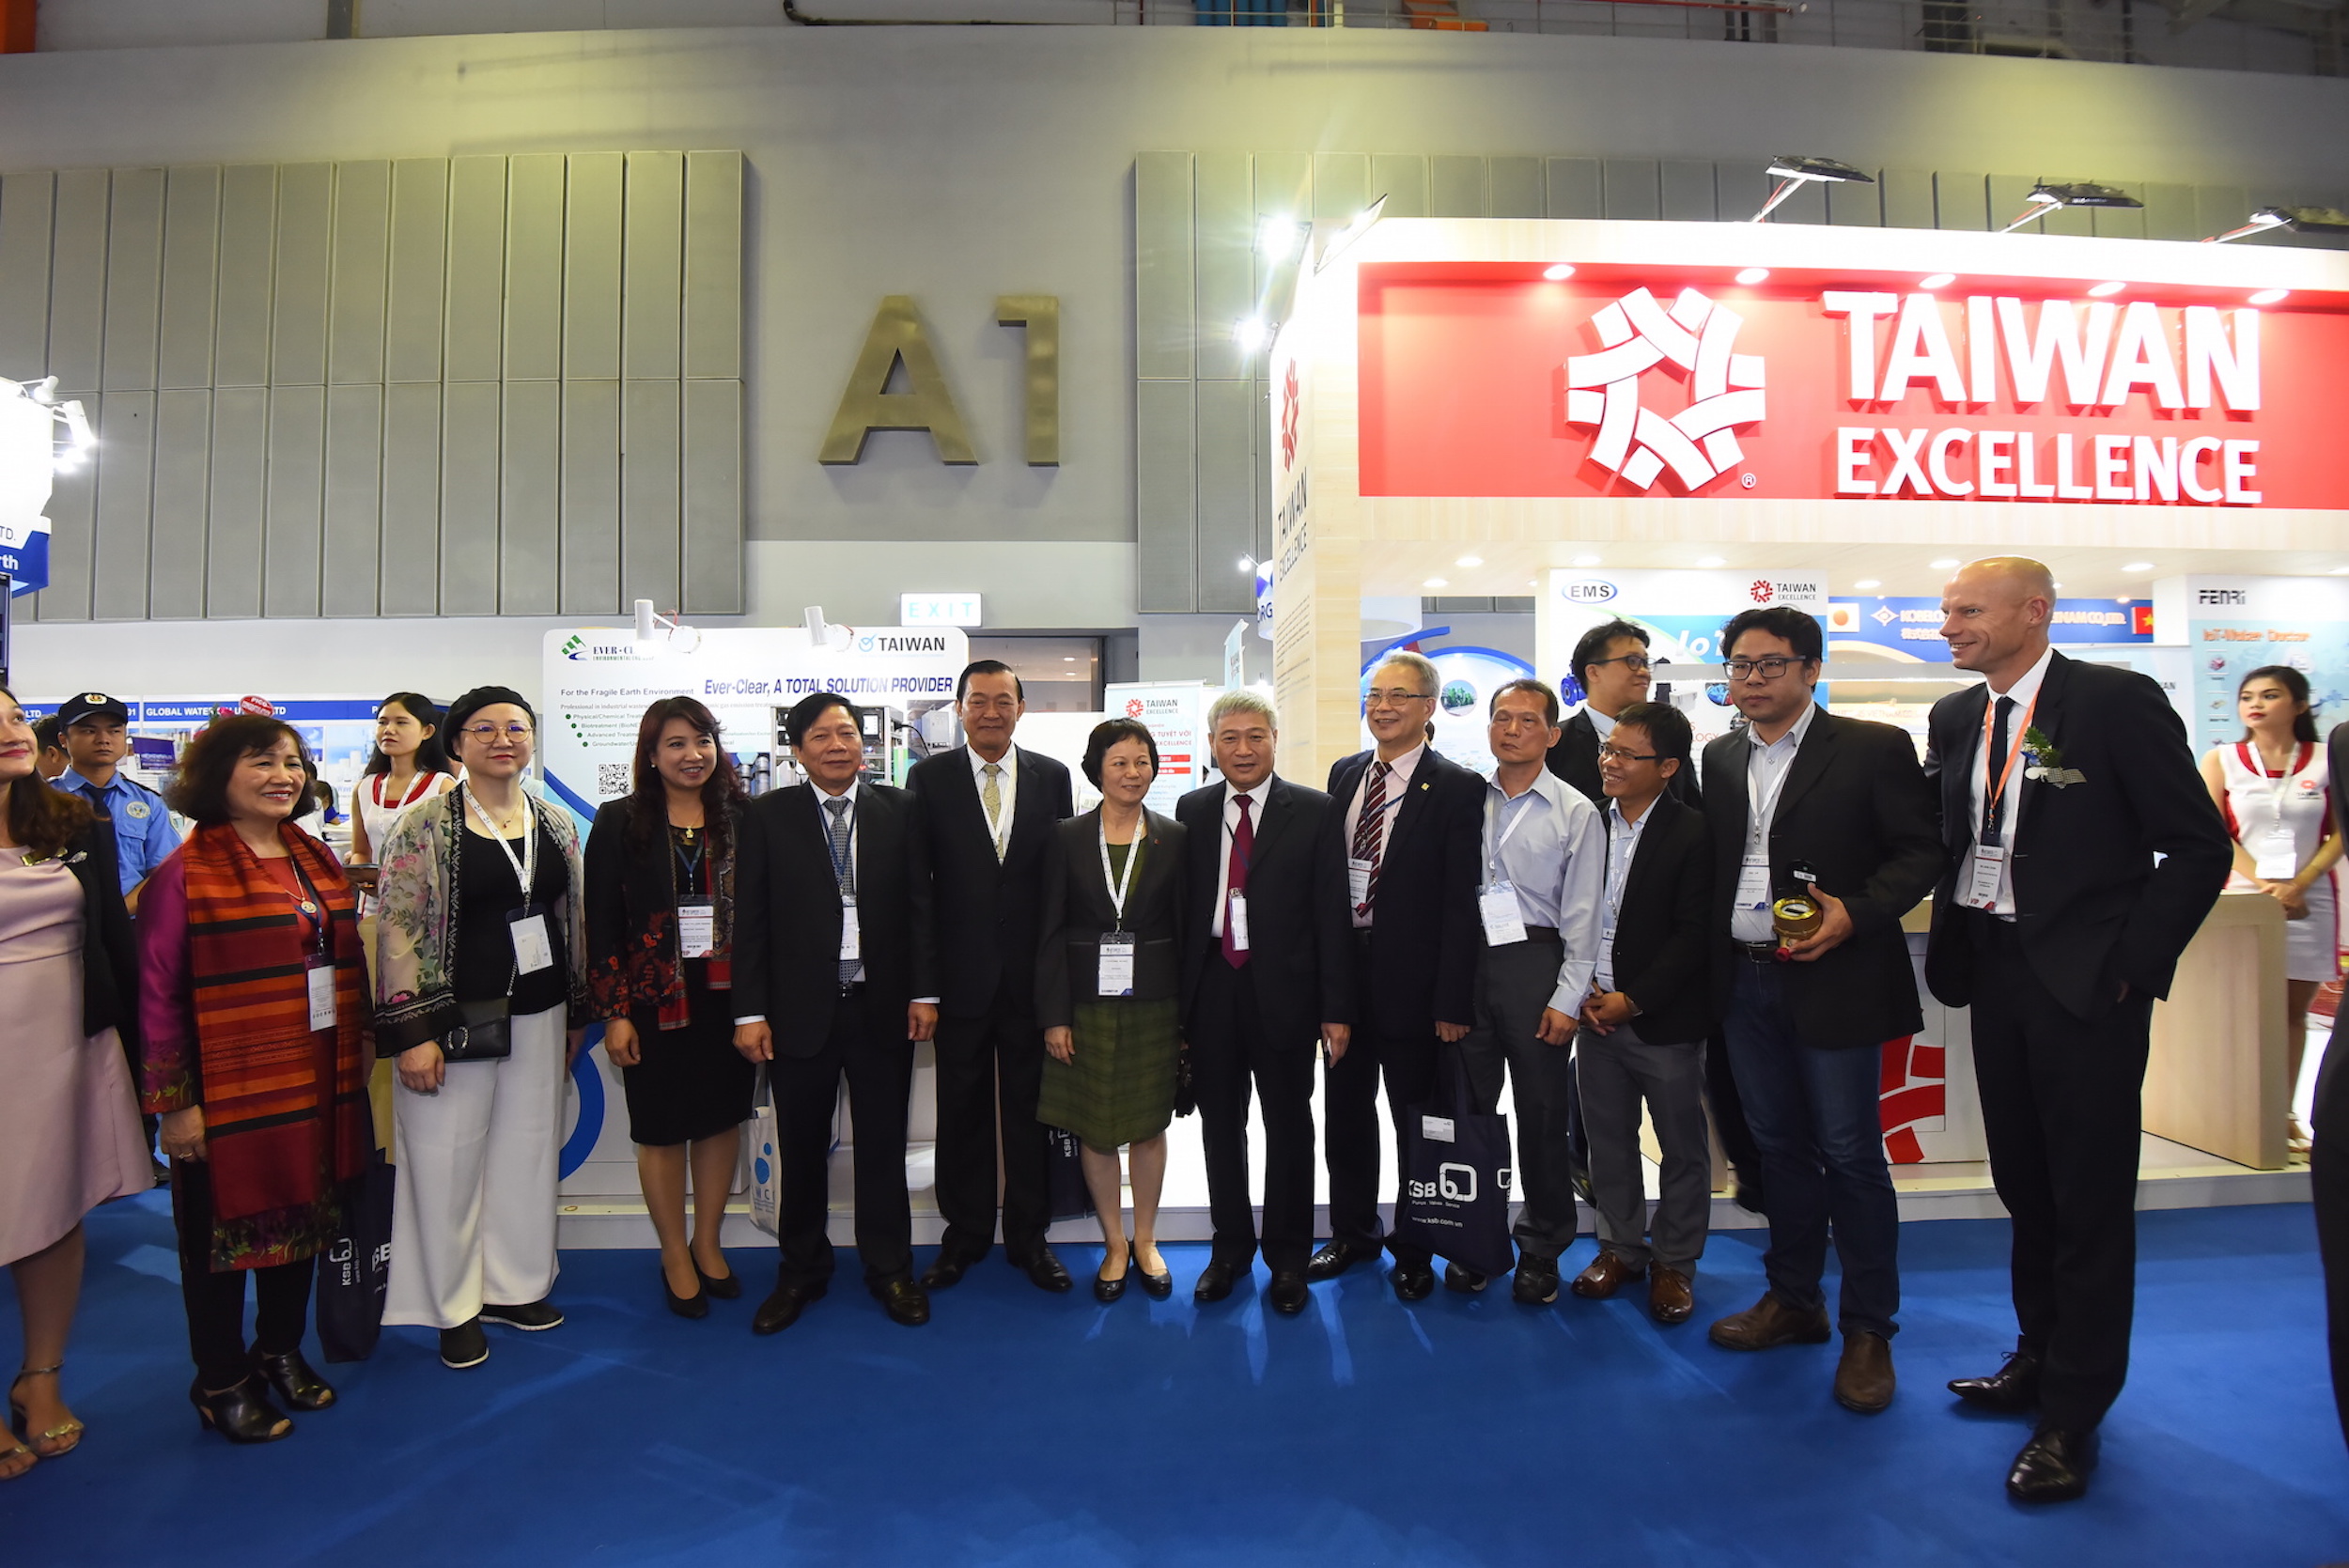 Taiwan Excellence tại Vietwater 2018: Tương lai bền vững ngành nước kiến tạo bởi thành tựu công nghệ